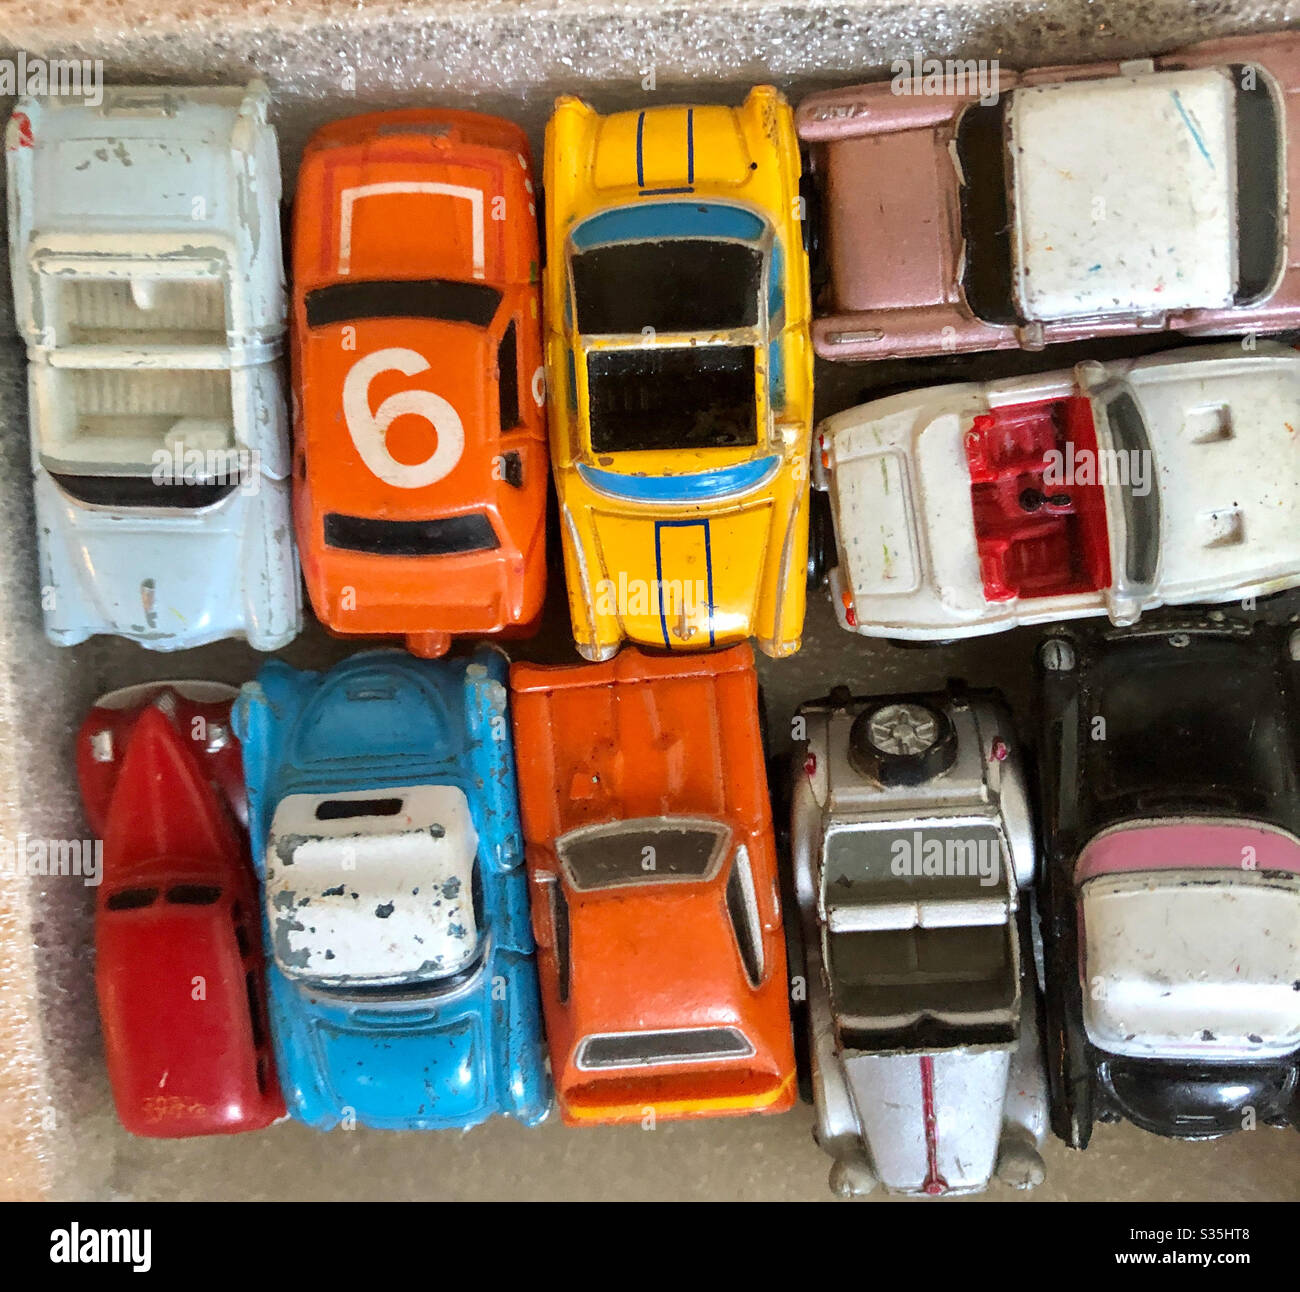 Modell Auto Sammlung Vintage Spielzeug Modell Autos voller Erinnerungen und bunt in Box angezeigt Stockfoto